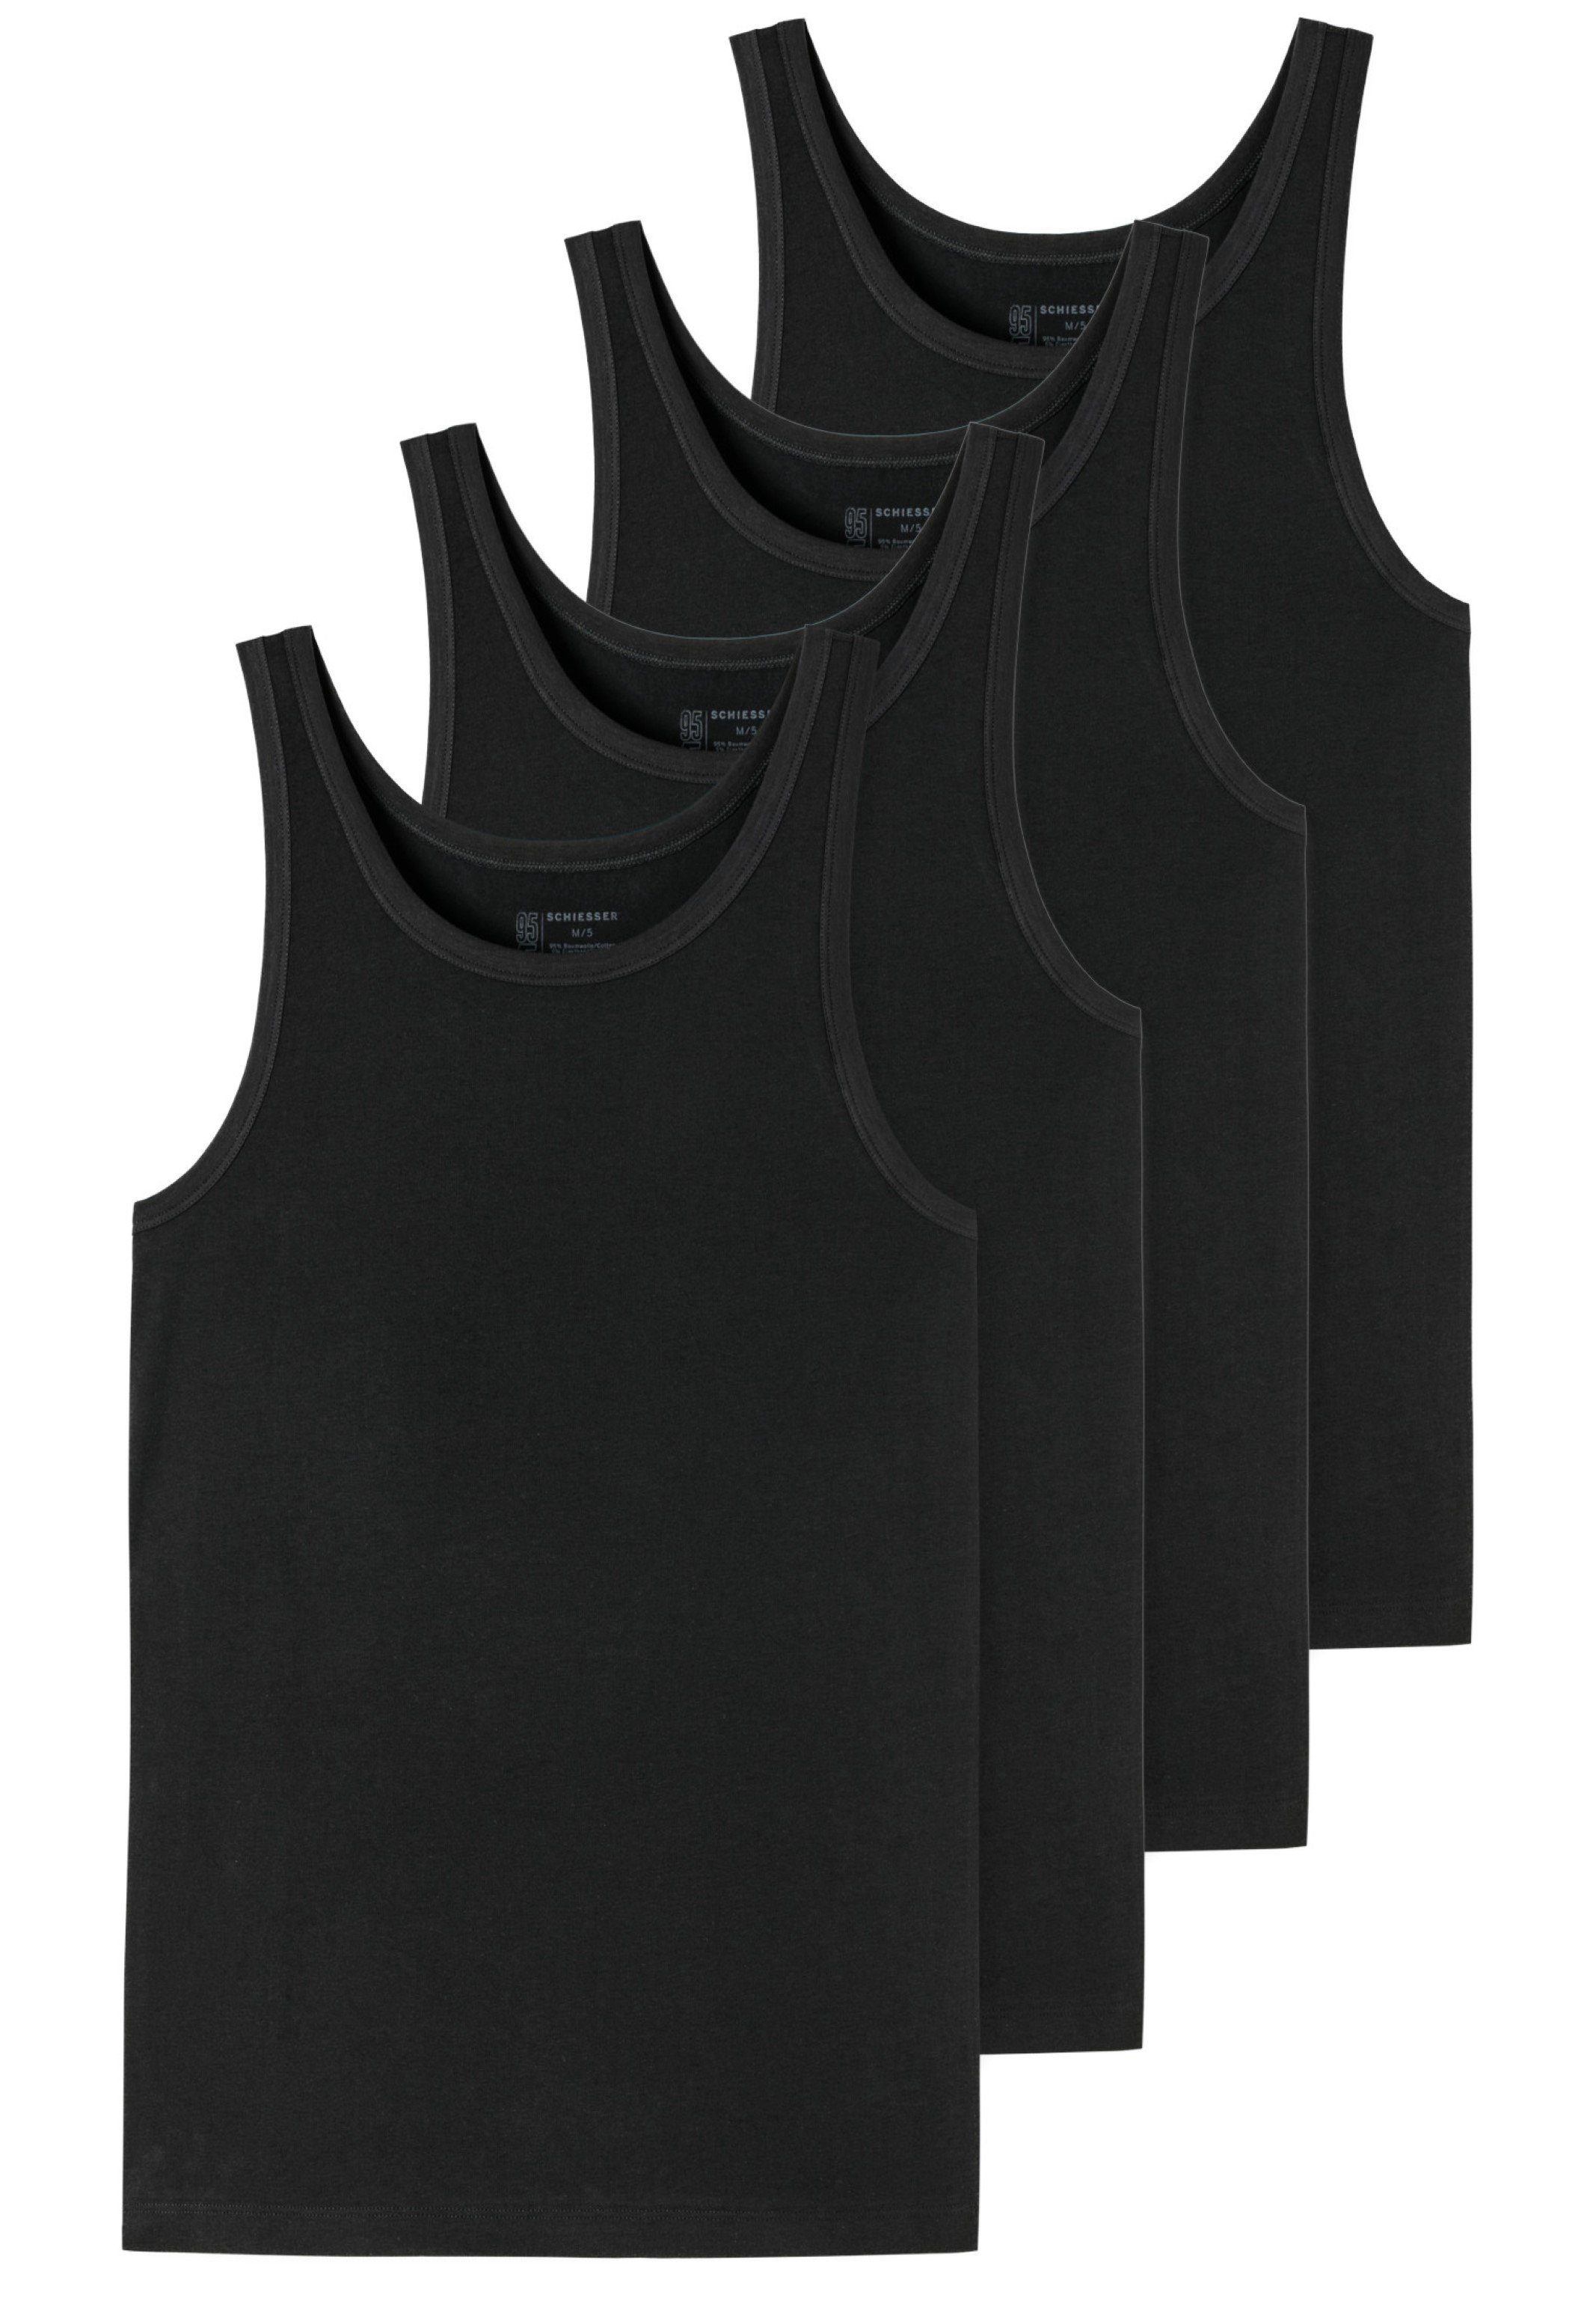 4er-Pack (Spar-Set, / - Tanktop Cotton - 4-St) - Tiefer Organic Schwarz - Unterhemd Schiesser Baumwolle Rundhalsausschnitt 95/5 Unterhemd